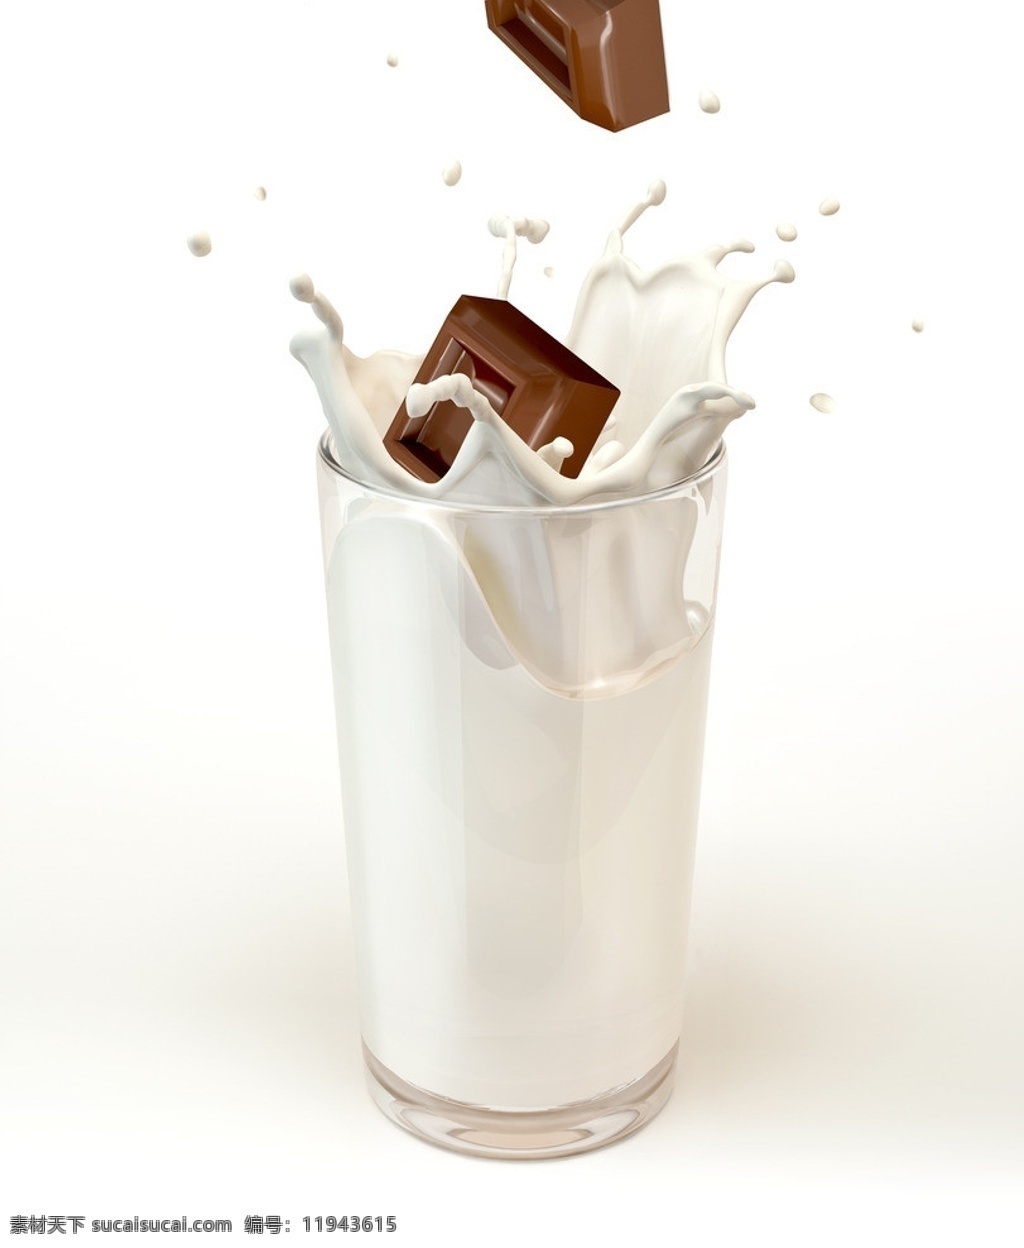 牛奶巧克力 牛奶 巧克力 杯子 玻璃杯 口杯 水滴 水花 飞溅 奶花 美食 餐饮美食 生活百科